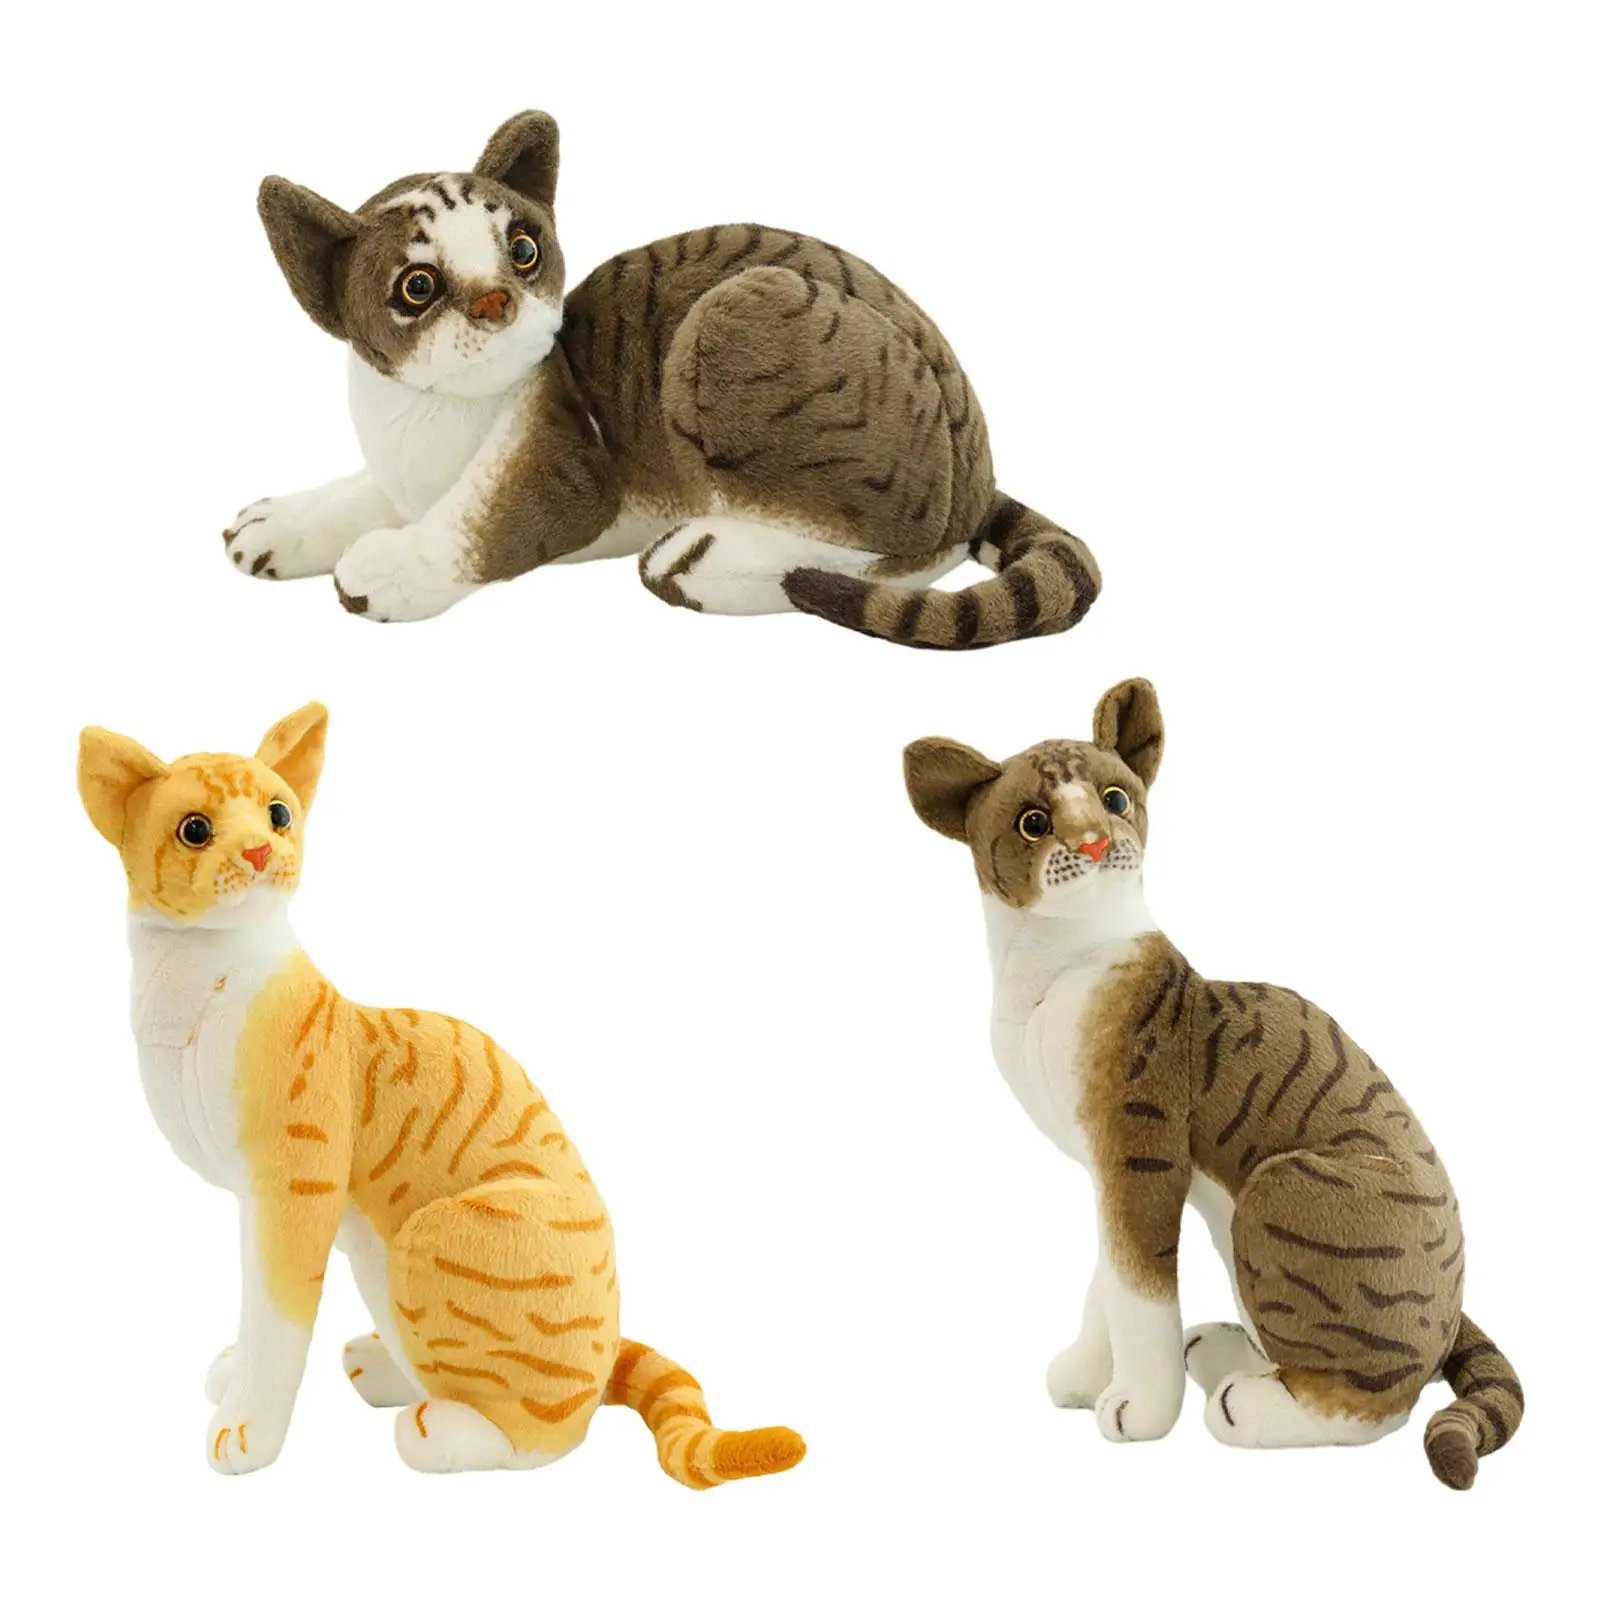 

Мягкие игрушки Kitty в виде животных, модель, подарок на день рождения, мягкая игрушка ручной работы, реалистичные кошки, плюшевая игрушка для детской комнаты, для спальни